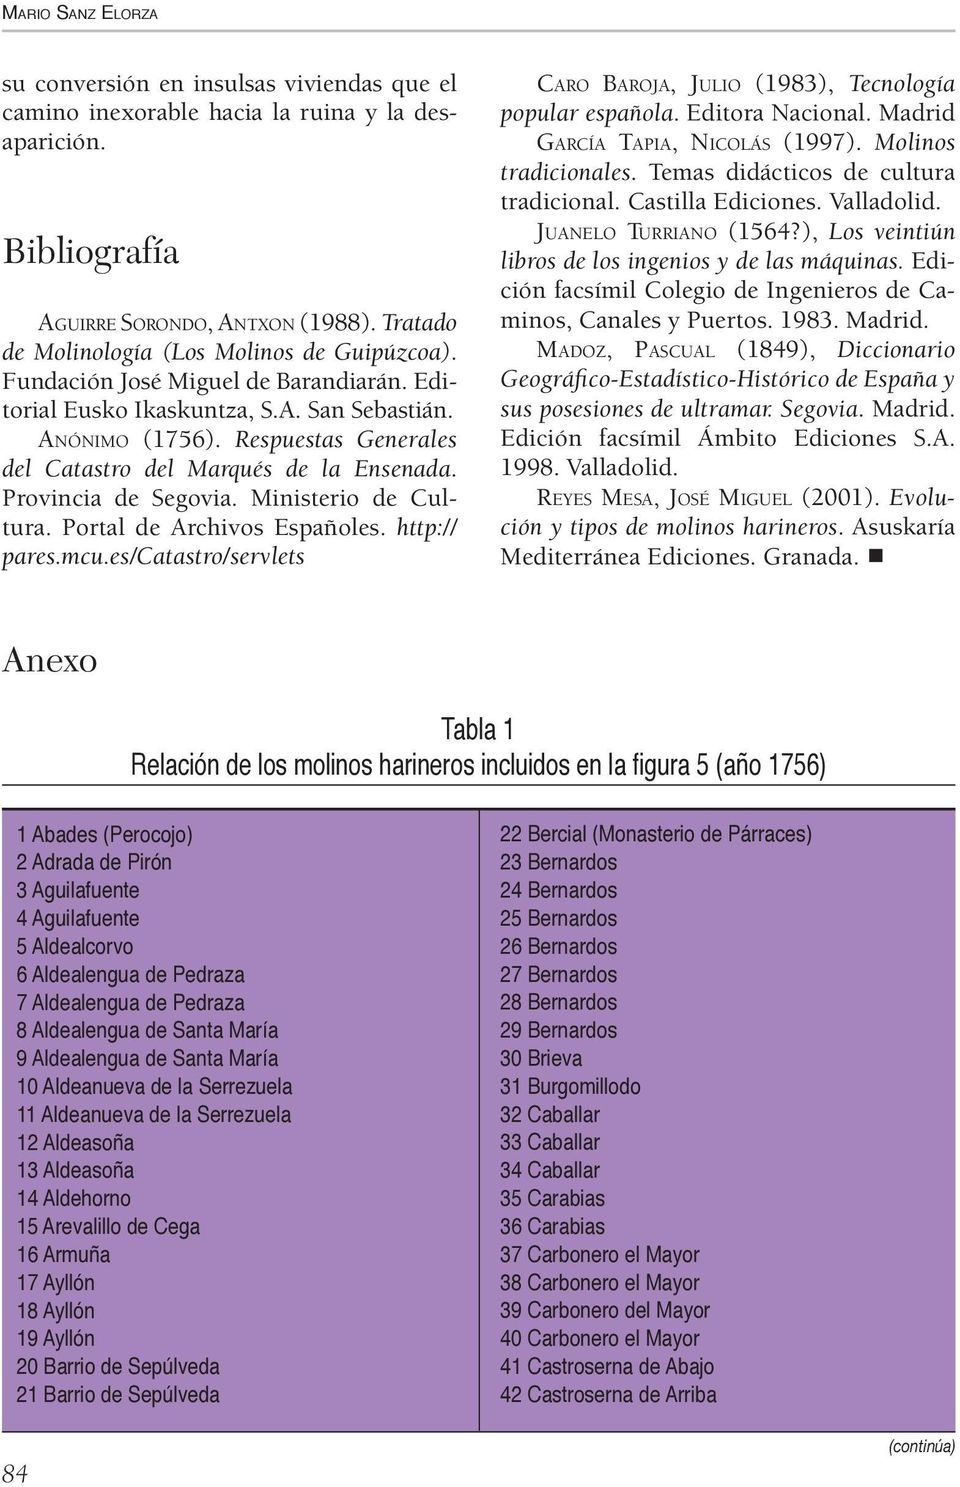 Respuestas Generales del Catastro del Marqués de la Ensenada. Provincia de Segovia. Ministerio de Cultura. Portal de Archivos Españoles. http:// pares.mcu.